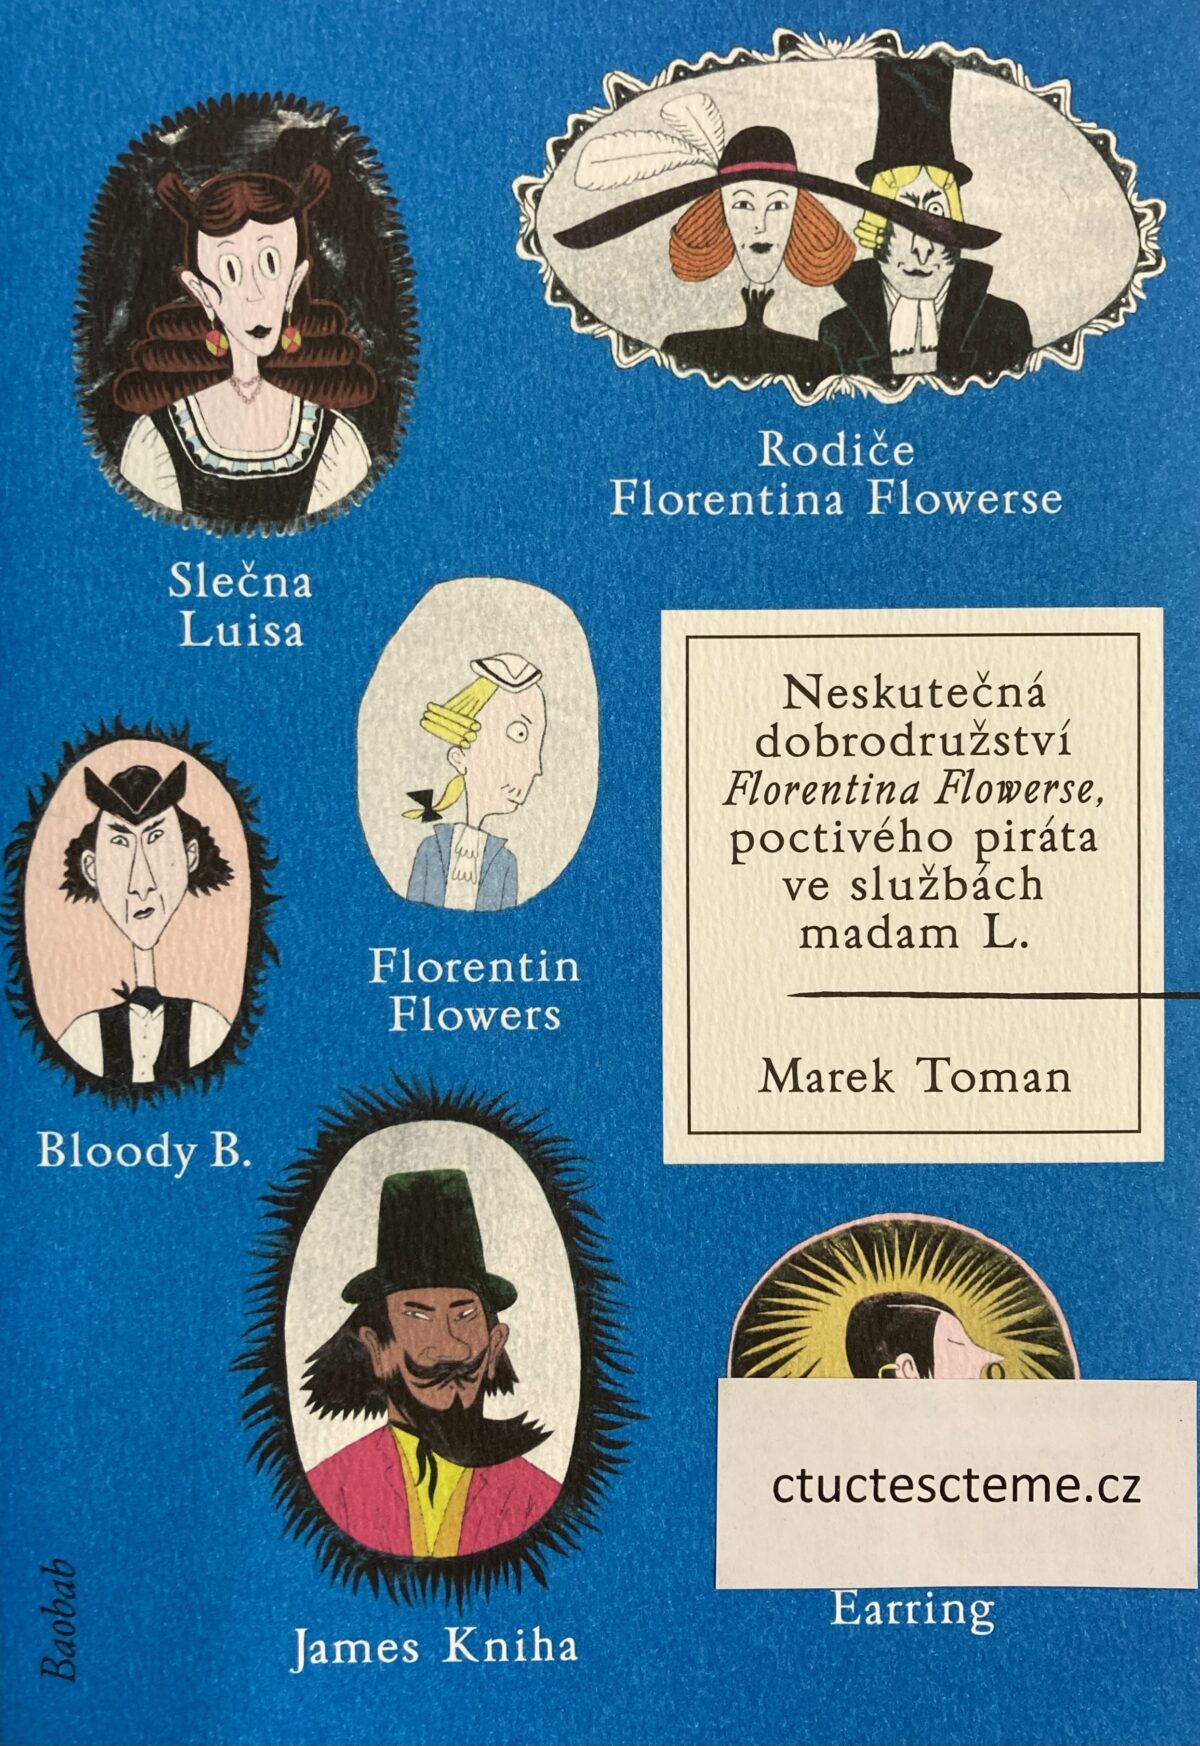 Marek Toman: Neskutečná dobrodružství Florentina Flowerse, poctivého piráta ve službách madam L.